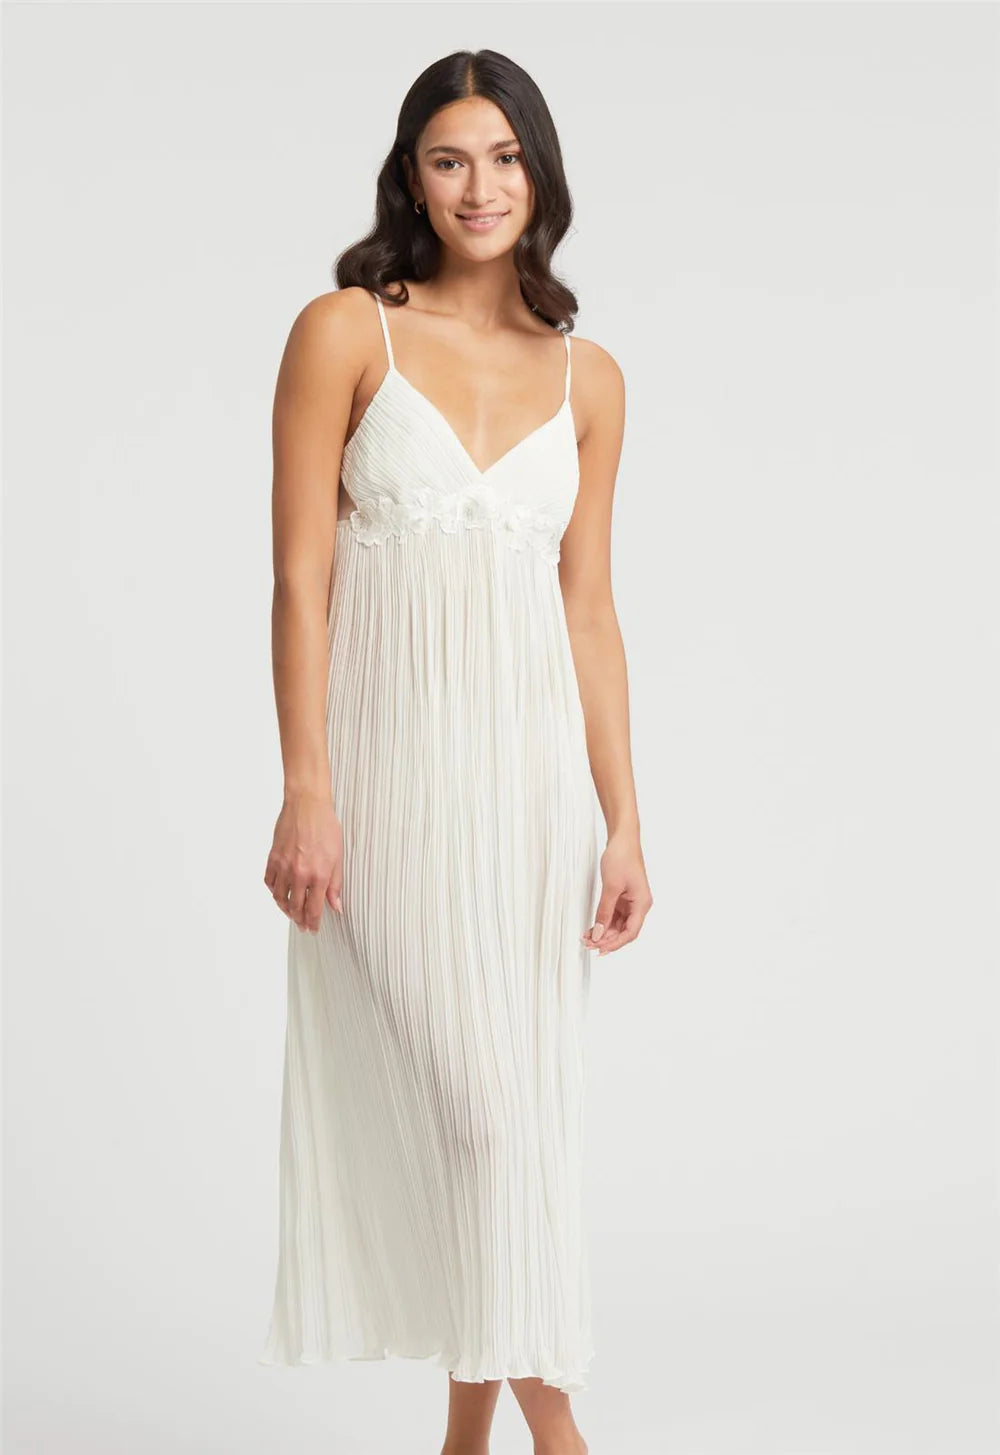 Rya True Love Gown for Stella Vasilantonakis + George Pagonis Bridal Registry - LE EL New York